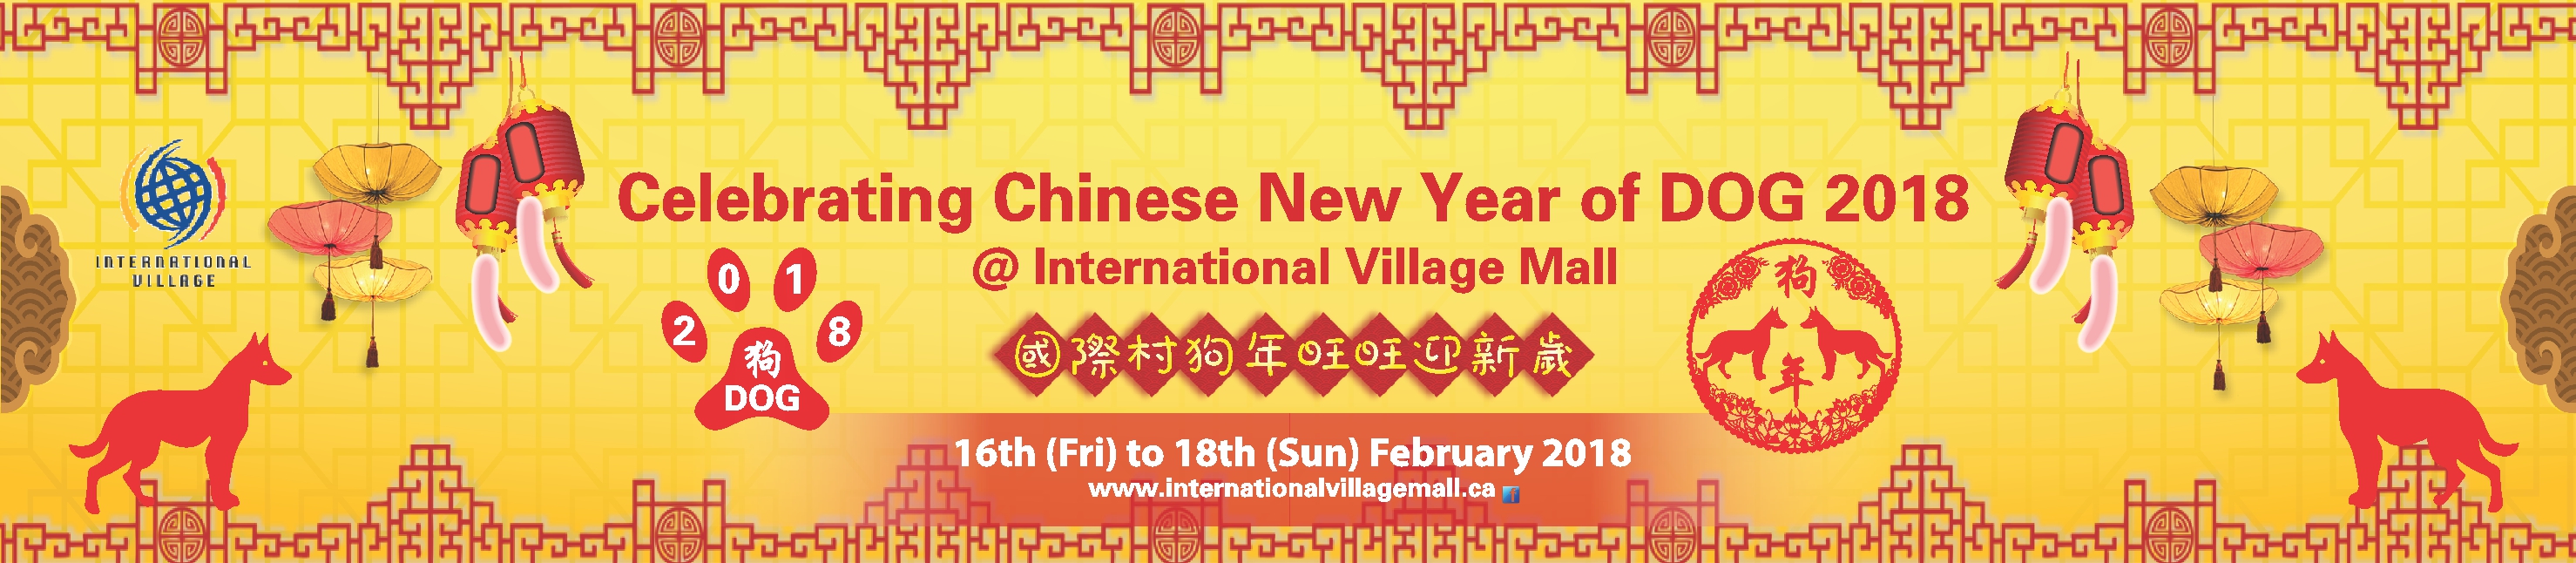 2018 International Village Mall Chinese New Year